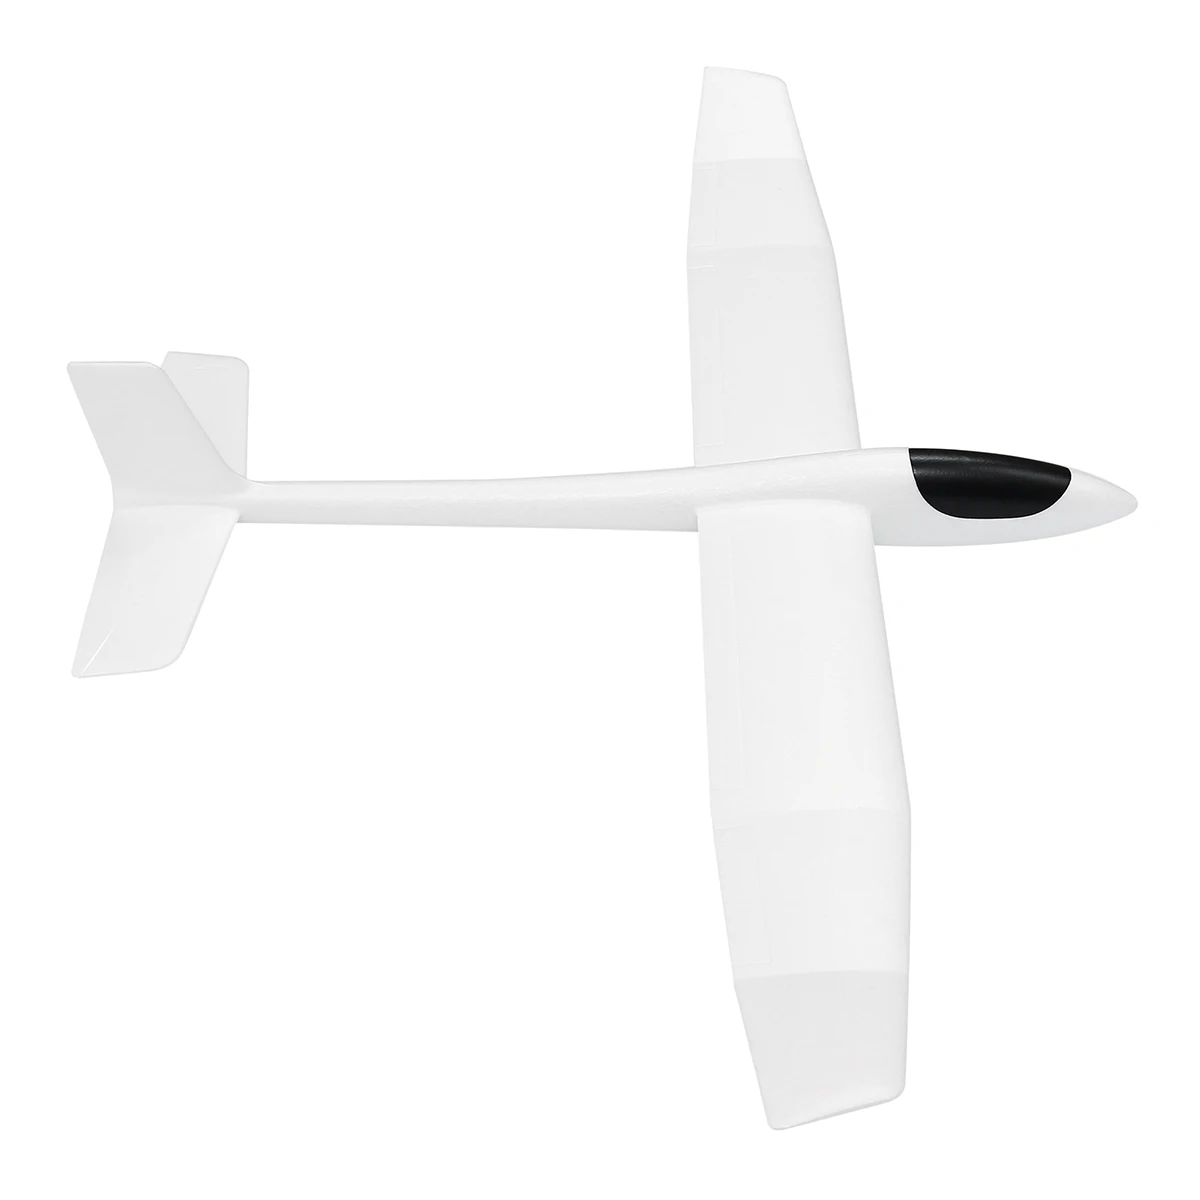 RC гоночный самолет размах крыльев ручной метательный планер EPO FX-707 фиксированное крыло наружная модель самолета DIY игрушки с наклейкой для детей